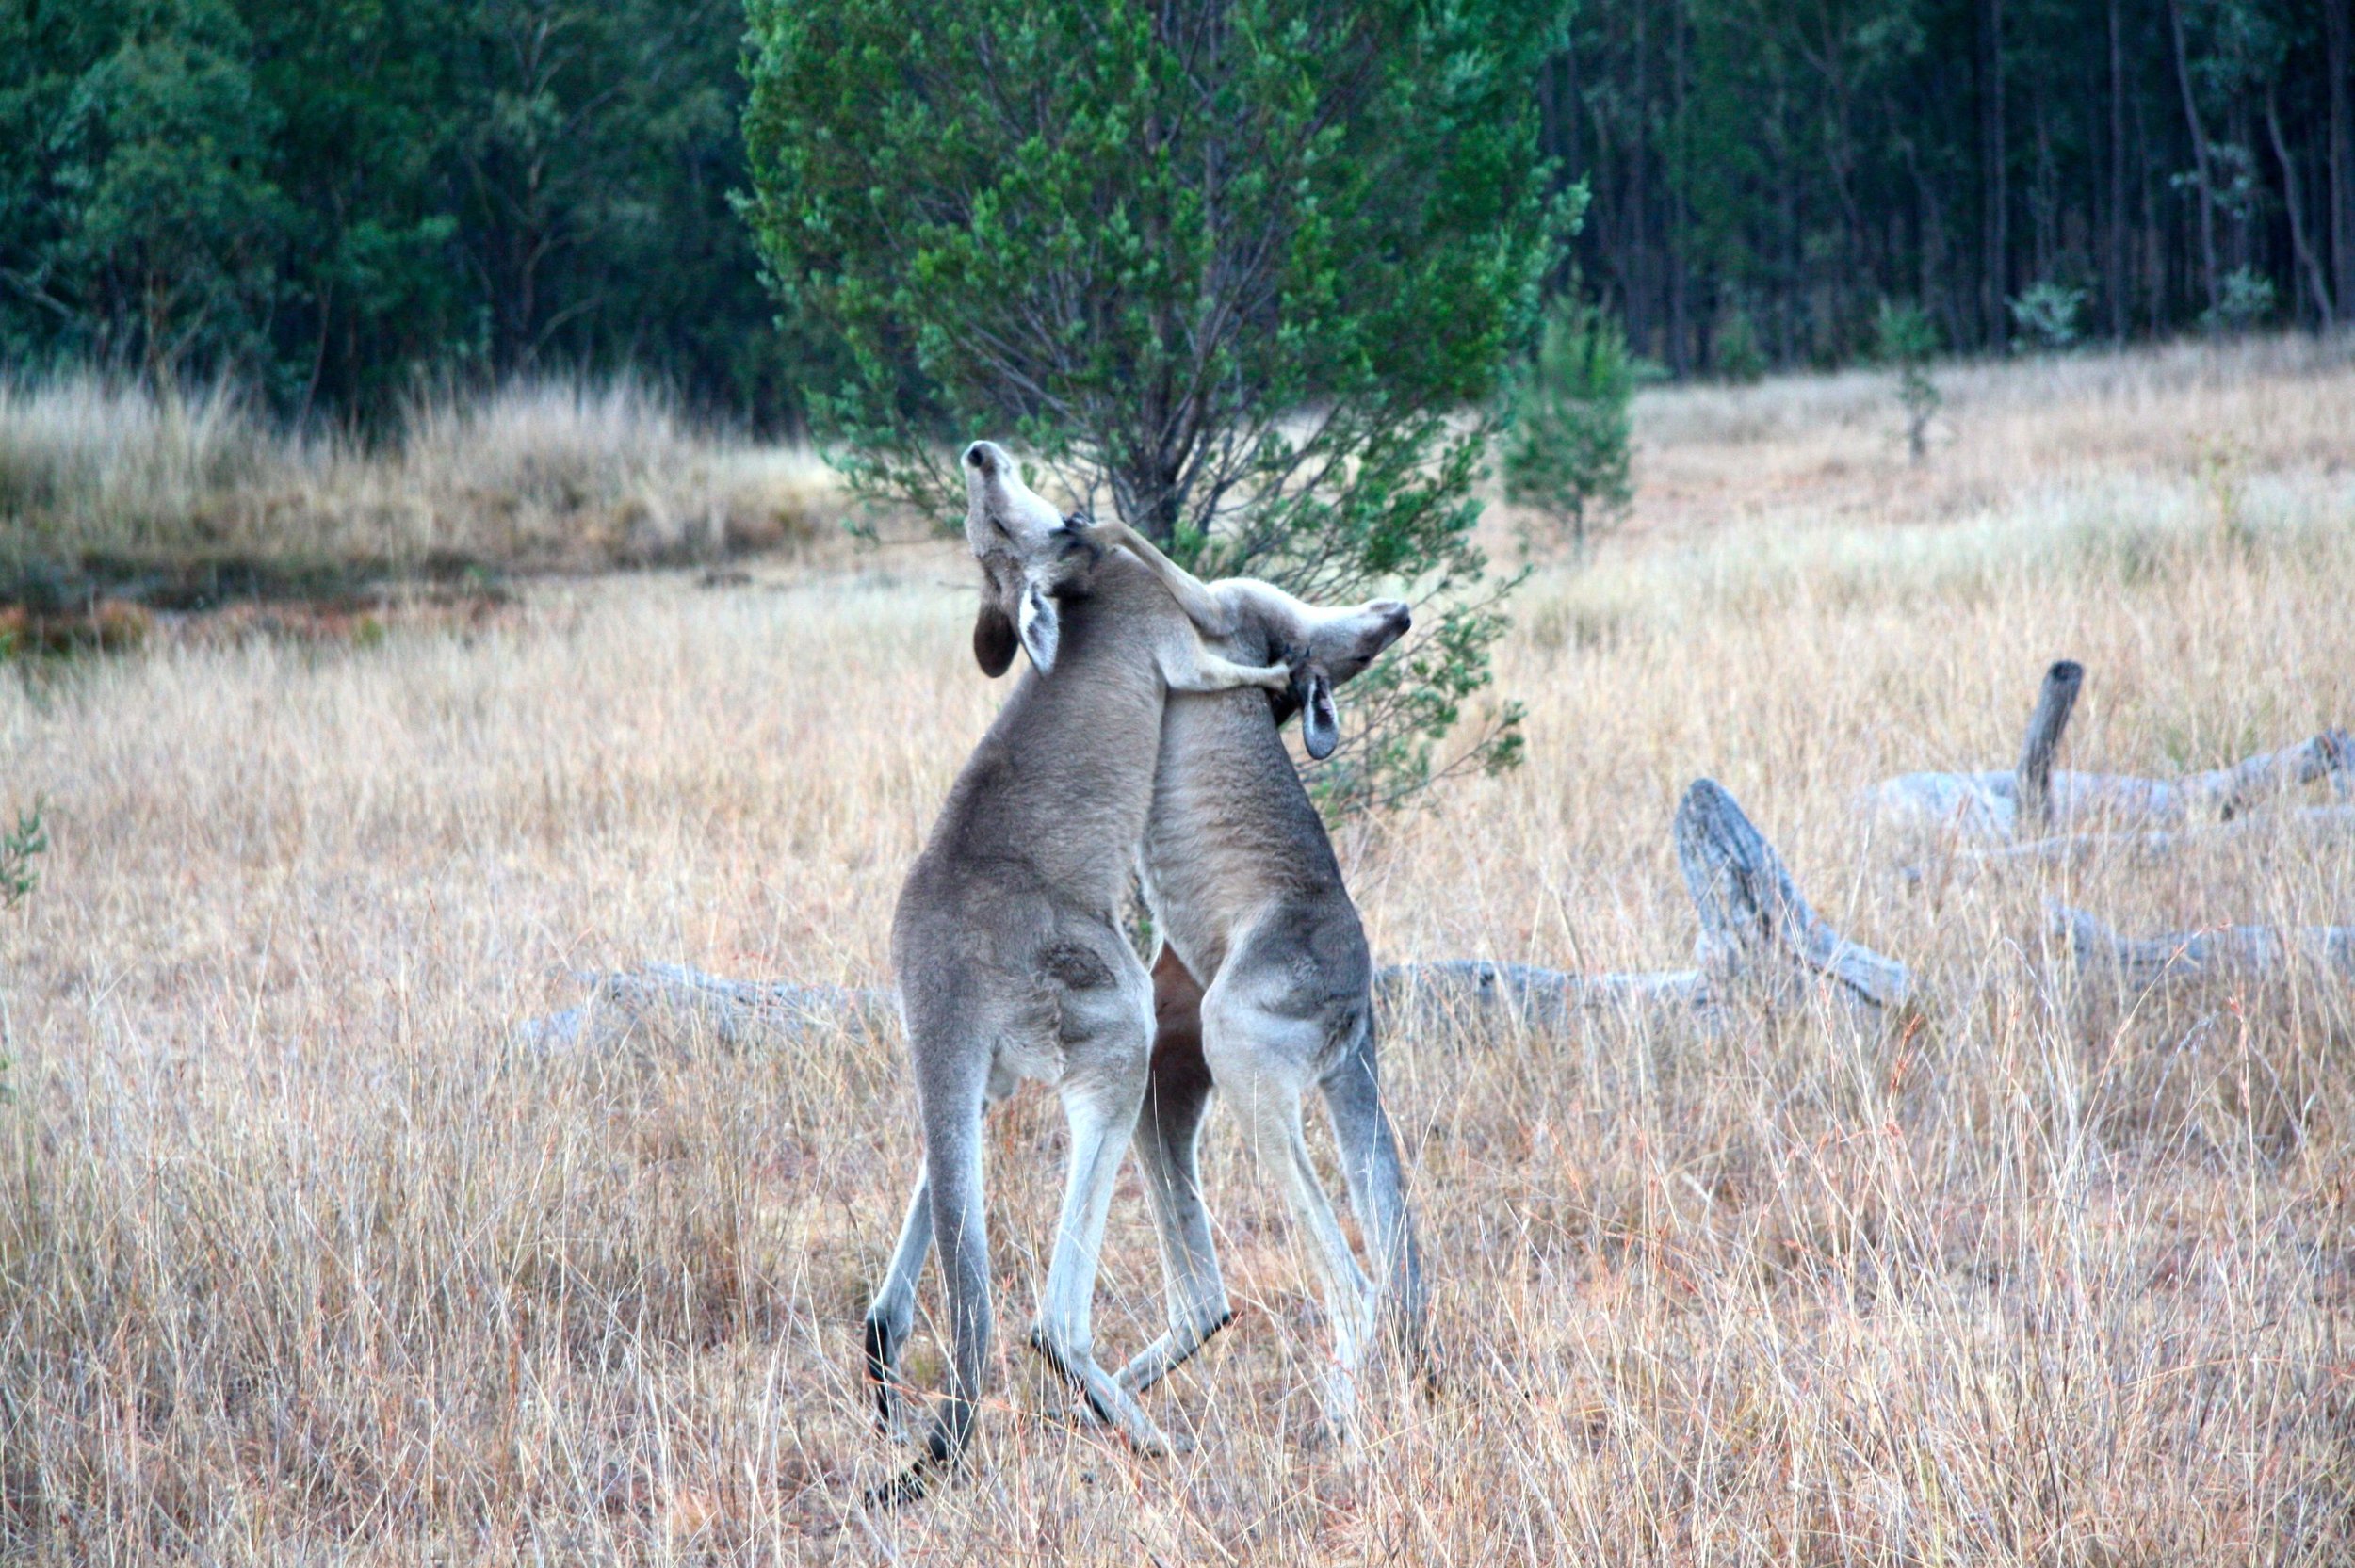   Two male kangaroos engaged in combat.  © Paloma Corvalan 